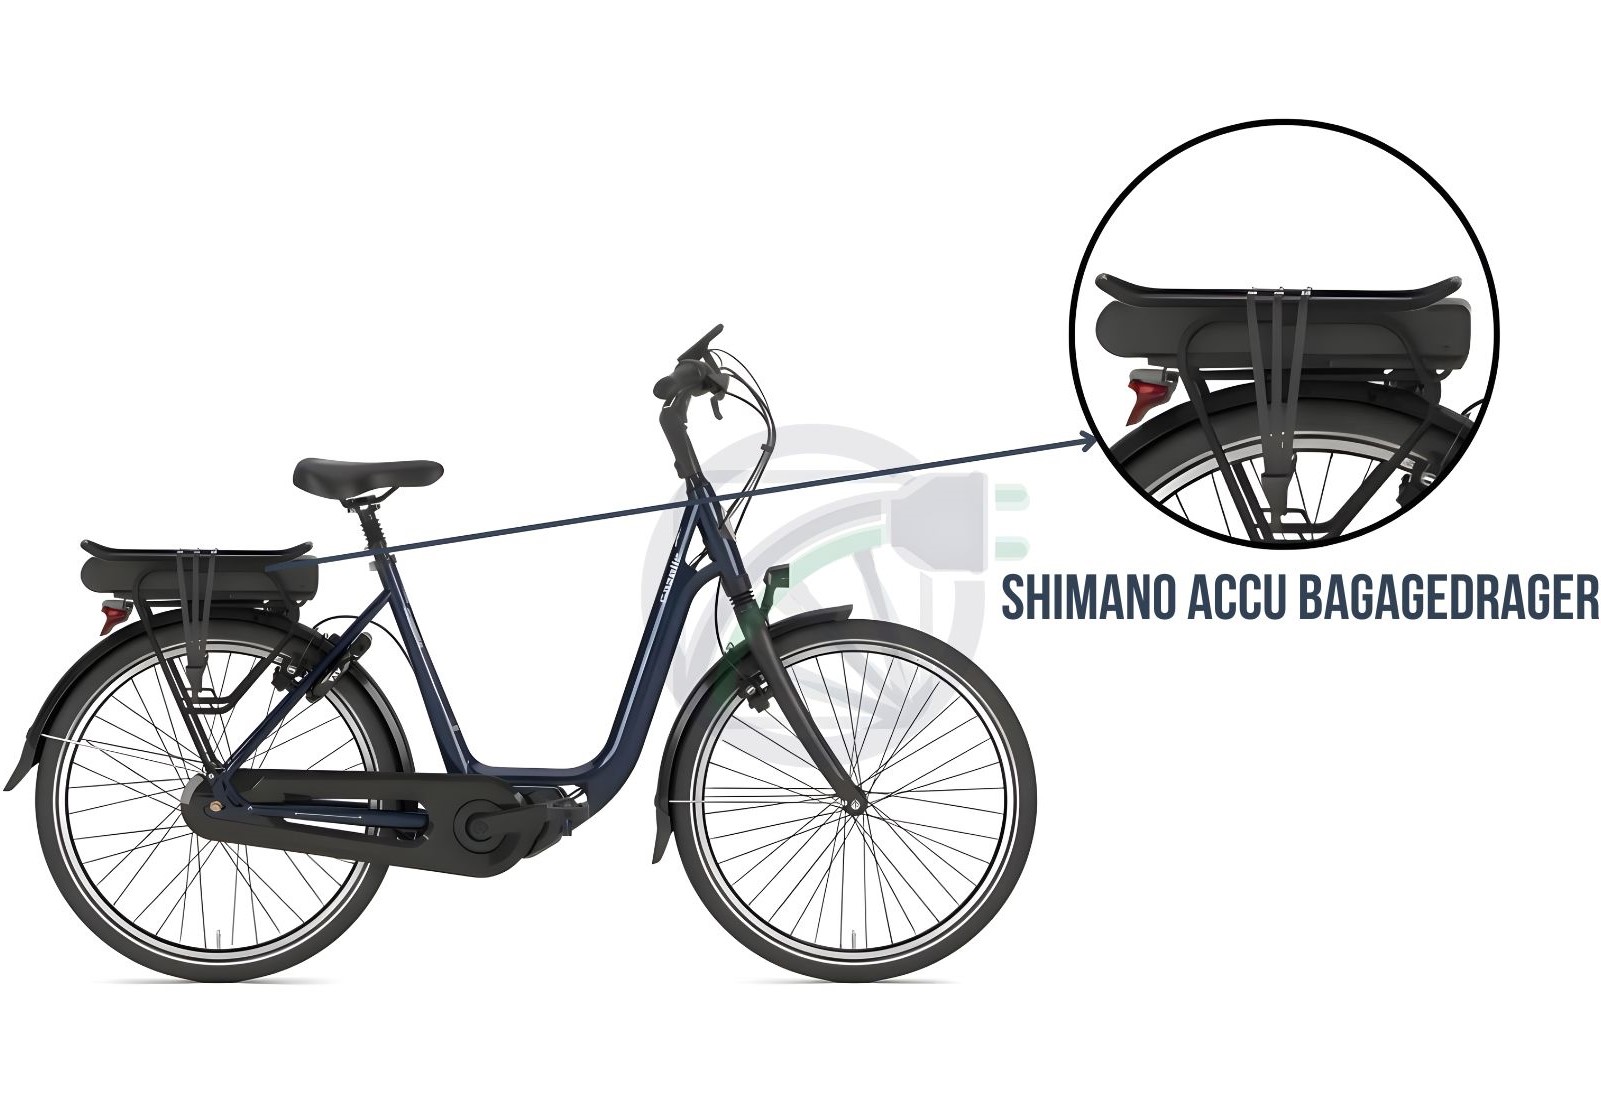 Fiets waarbij wordt uitgelicht, waar op de fiets, de accu bevestigd hoort te worden. Daarnaast wordt er beschreven welke Shimano accu er in dit soort fietsen past.